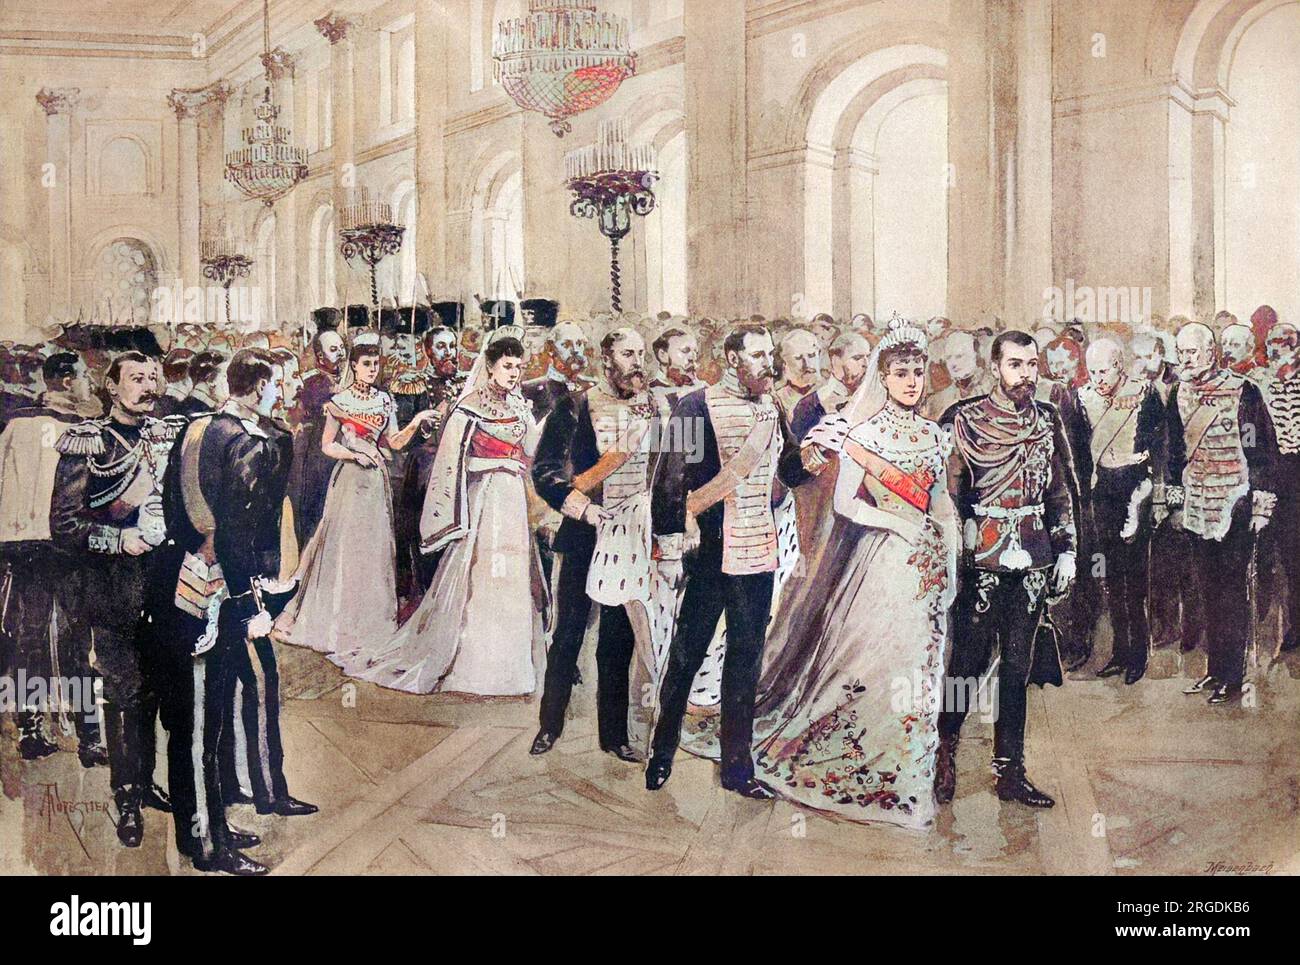 Die Prozession zur Kapelle im Winterpalast während der Hochzeit von Zar Nicholas II. Und Großherzogin Alexandra Feodorowna, Prinzessin Alix von Hessen. Stockfoto